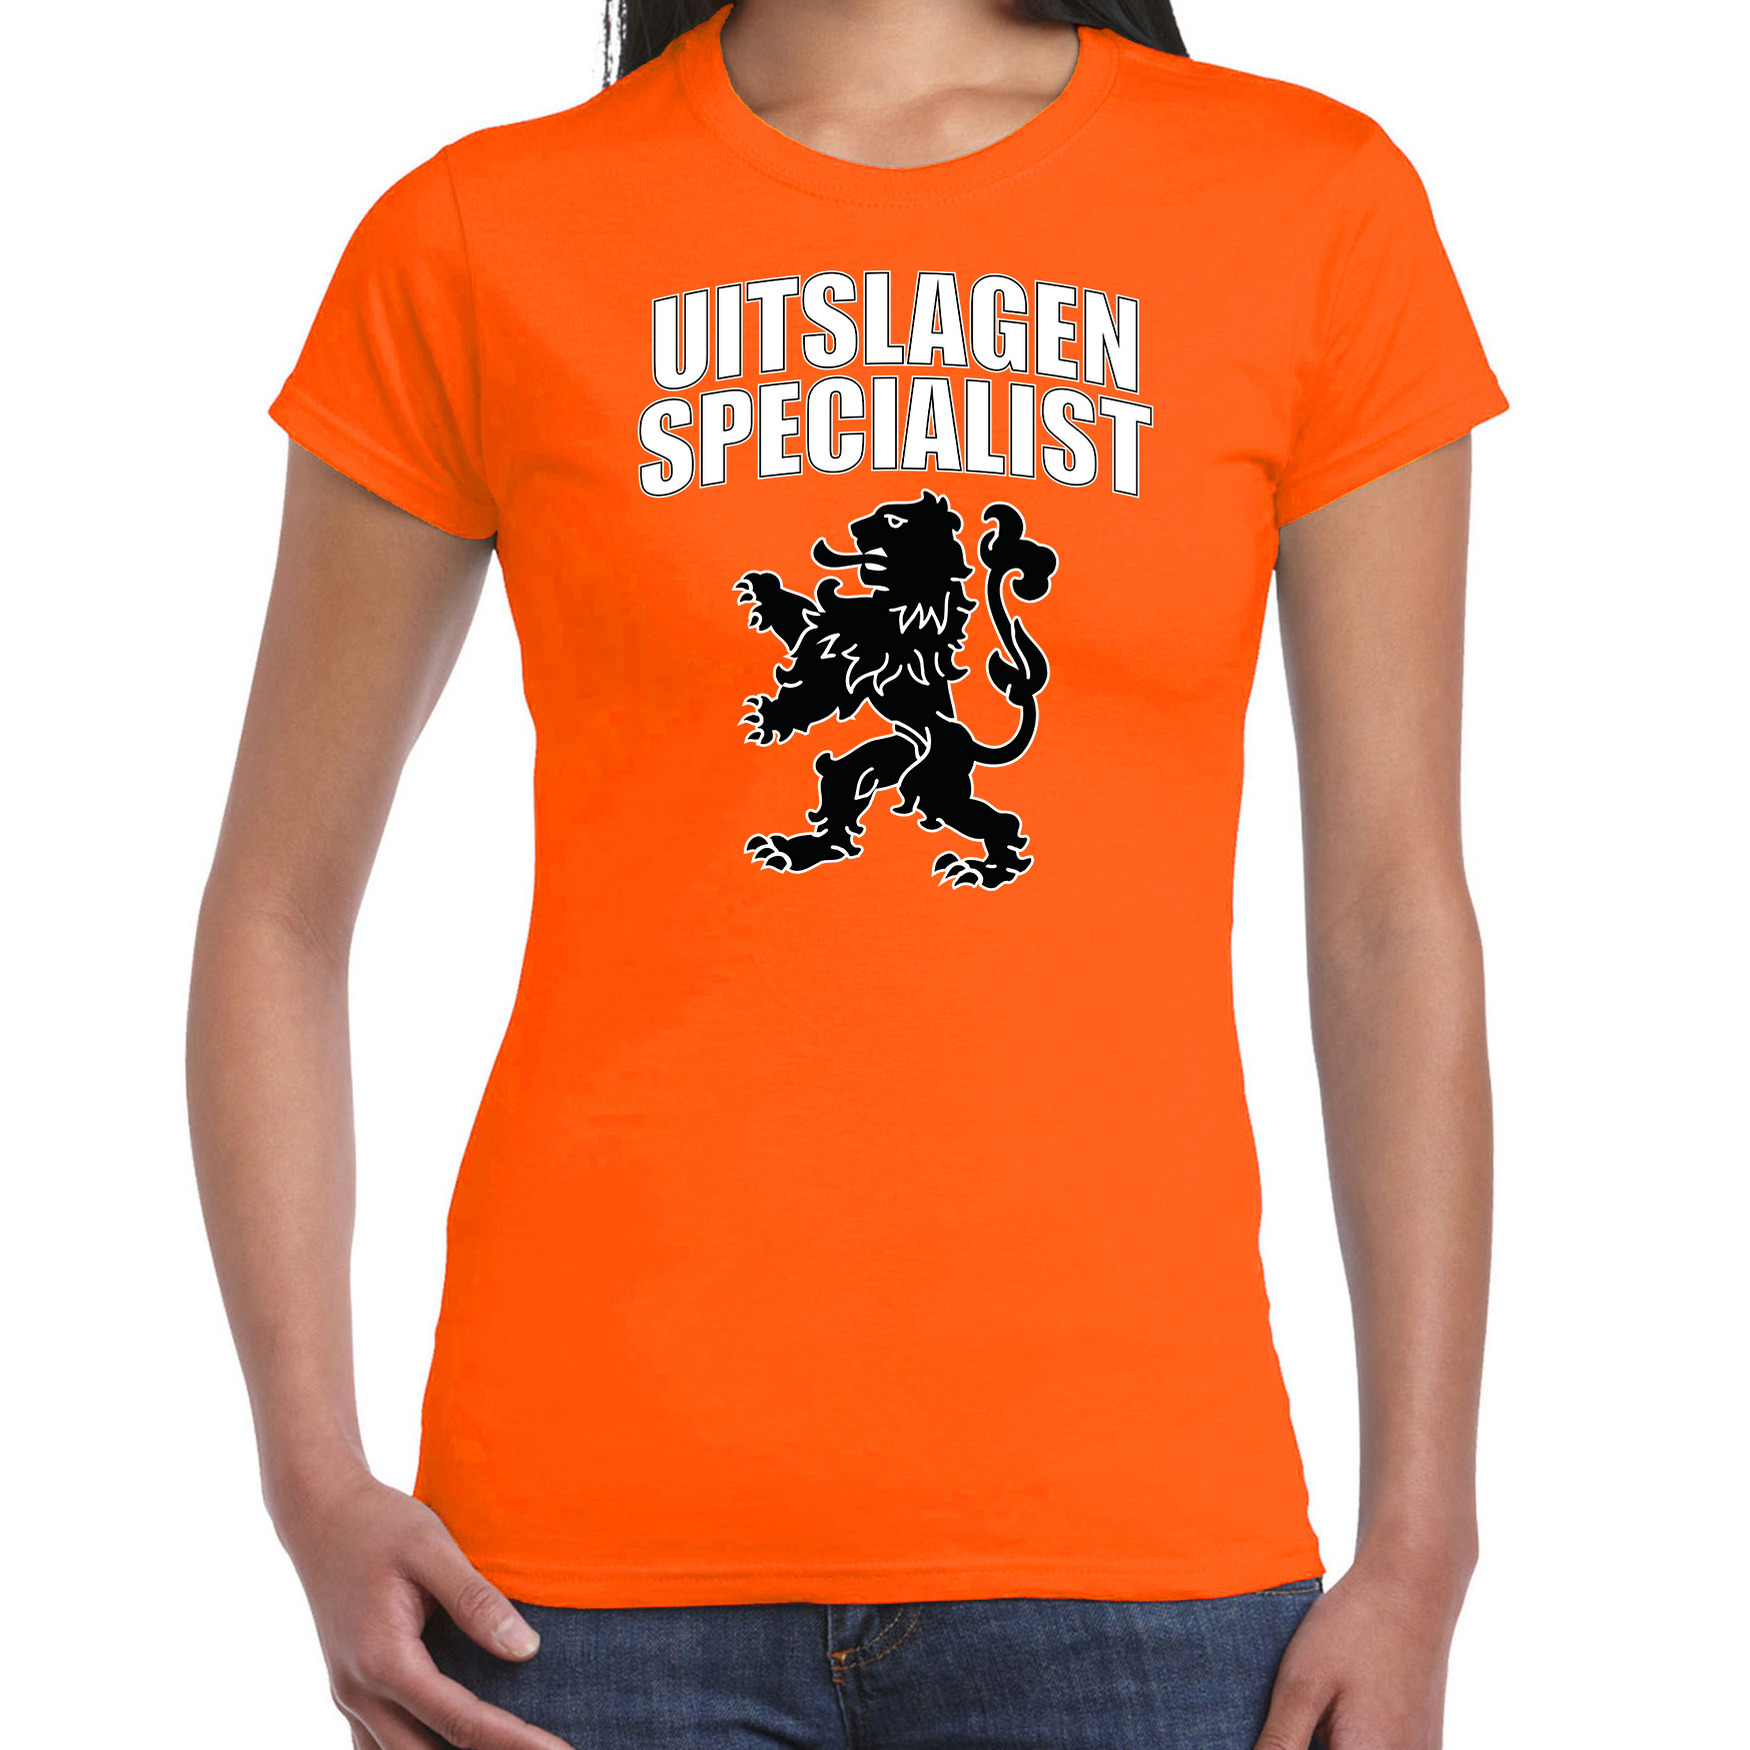 Uitslagen specialist met leeuw oranje t-shirt Holland-Nederland supporter EK- WK voor dames